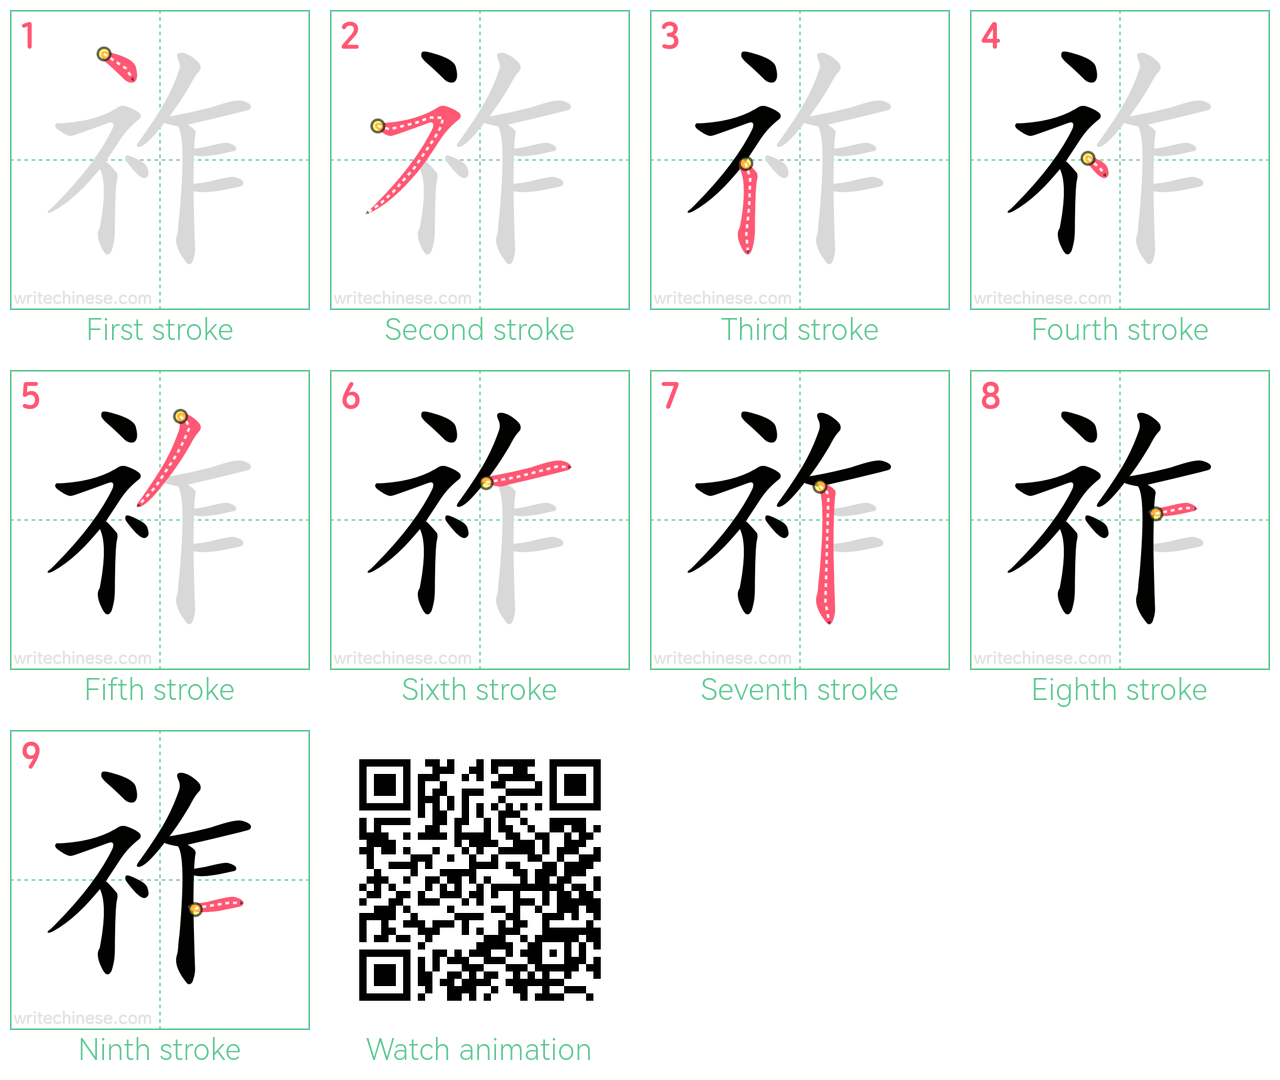 祚 step-by-step stroke order diagrams